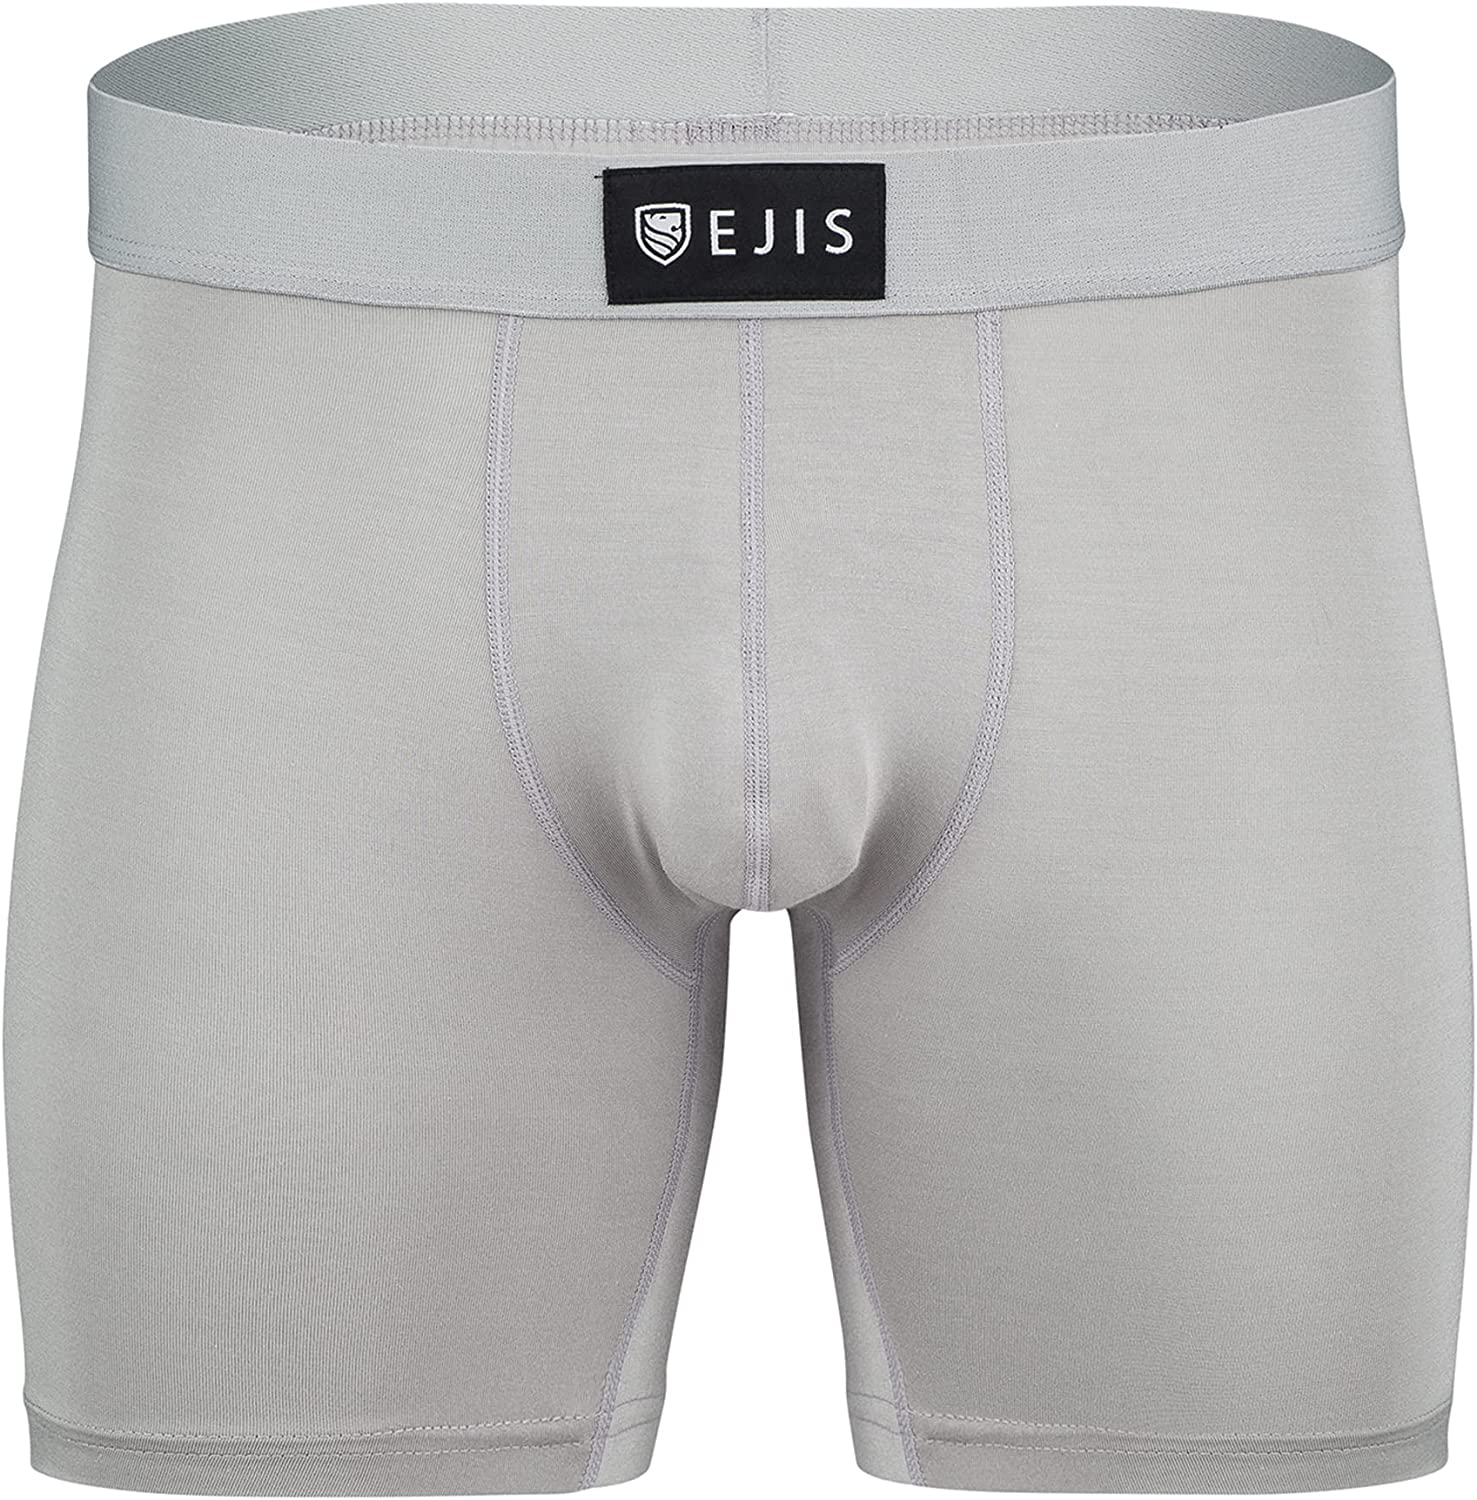 Ejis Sweatproof Mens Boxer Briefs Modal Pouch Underwear w Sweat Pads,  Silver Tre